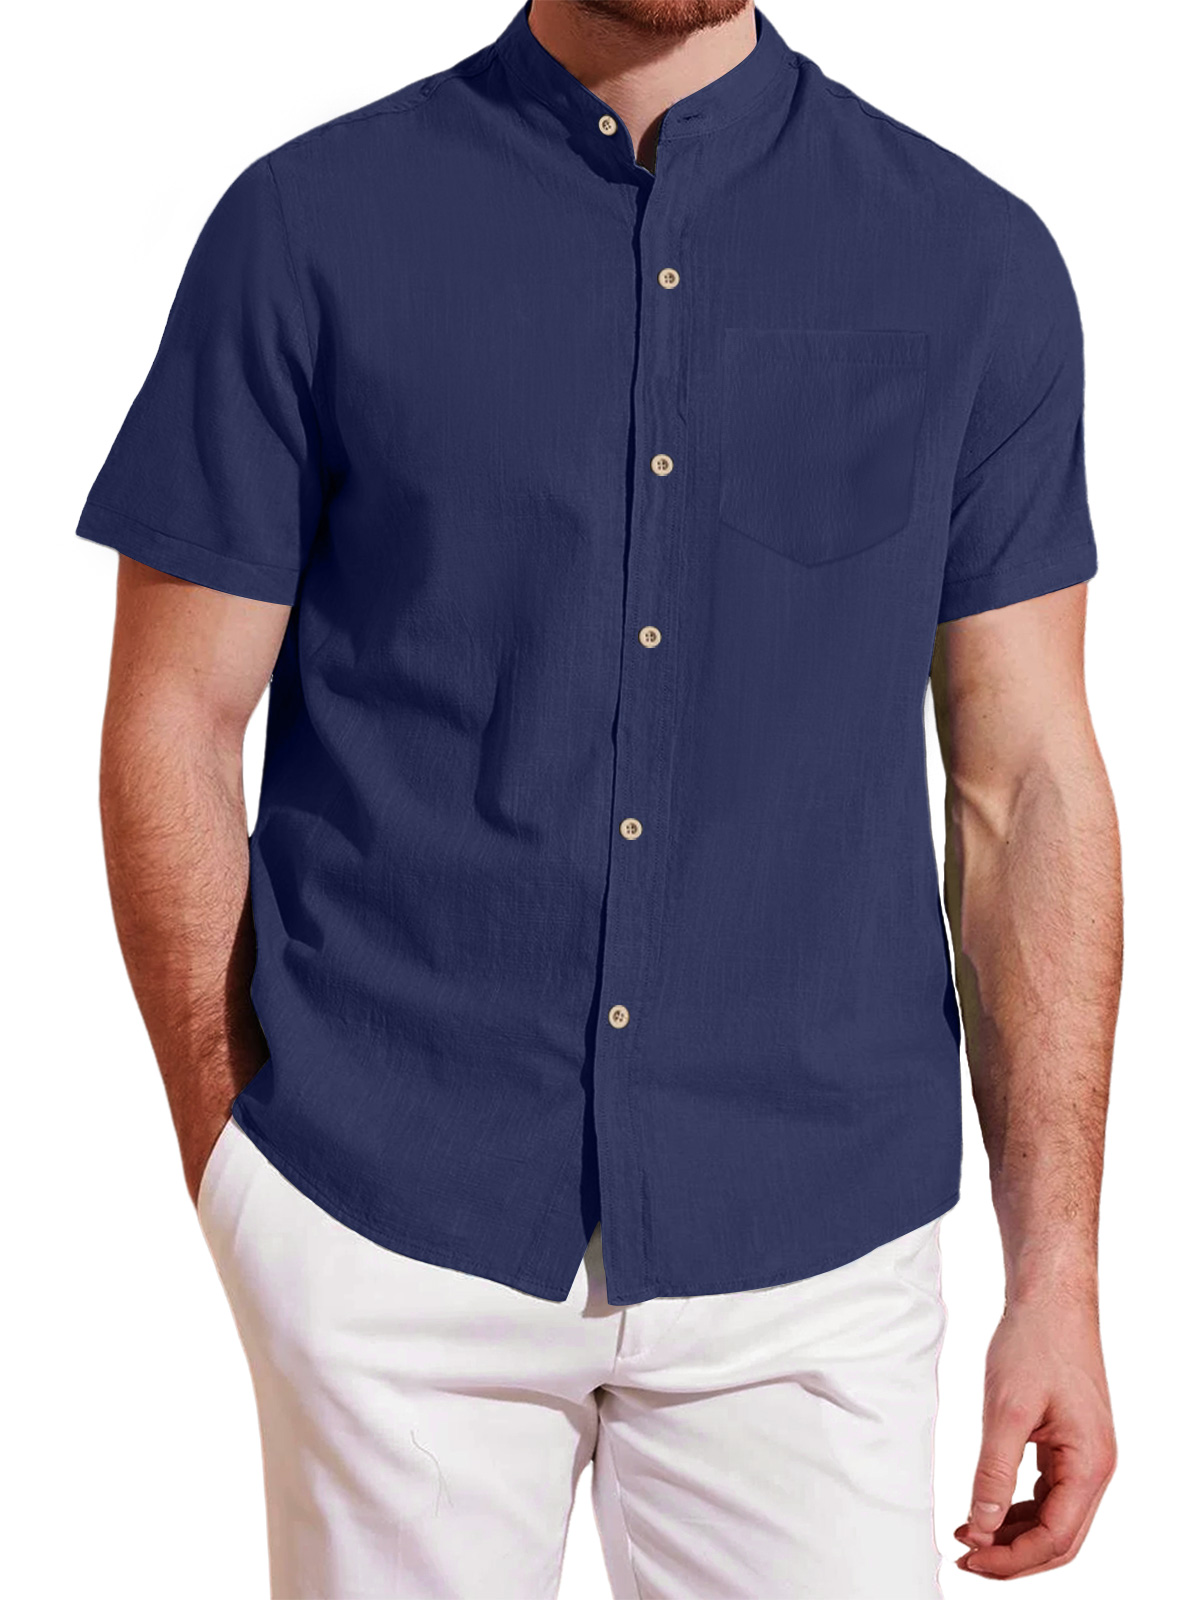 Men's stand collar pocket cotton and linen short sleeve shirt